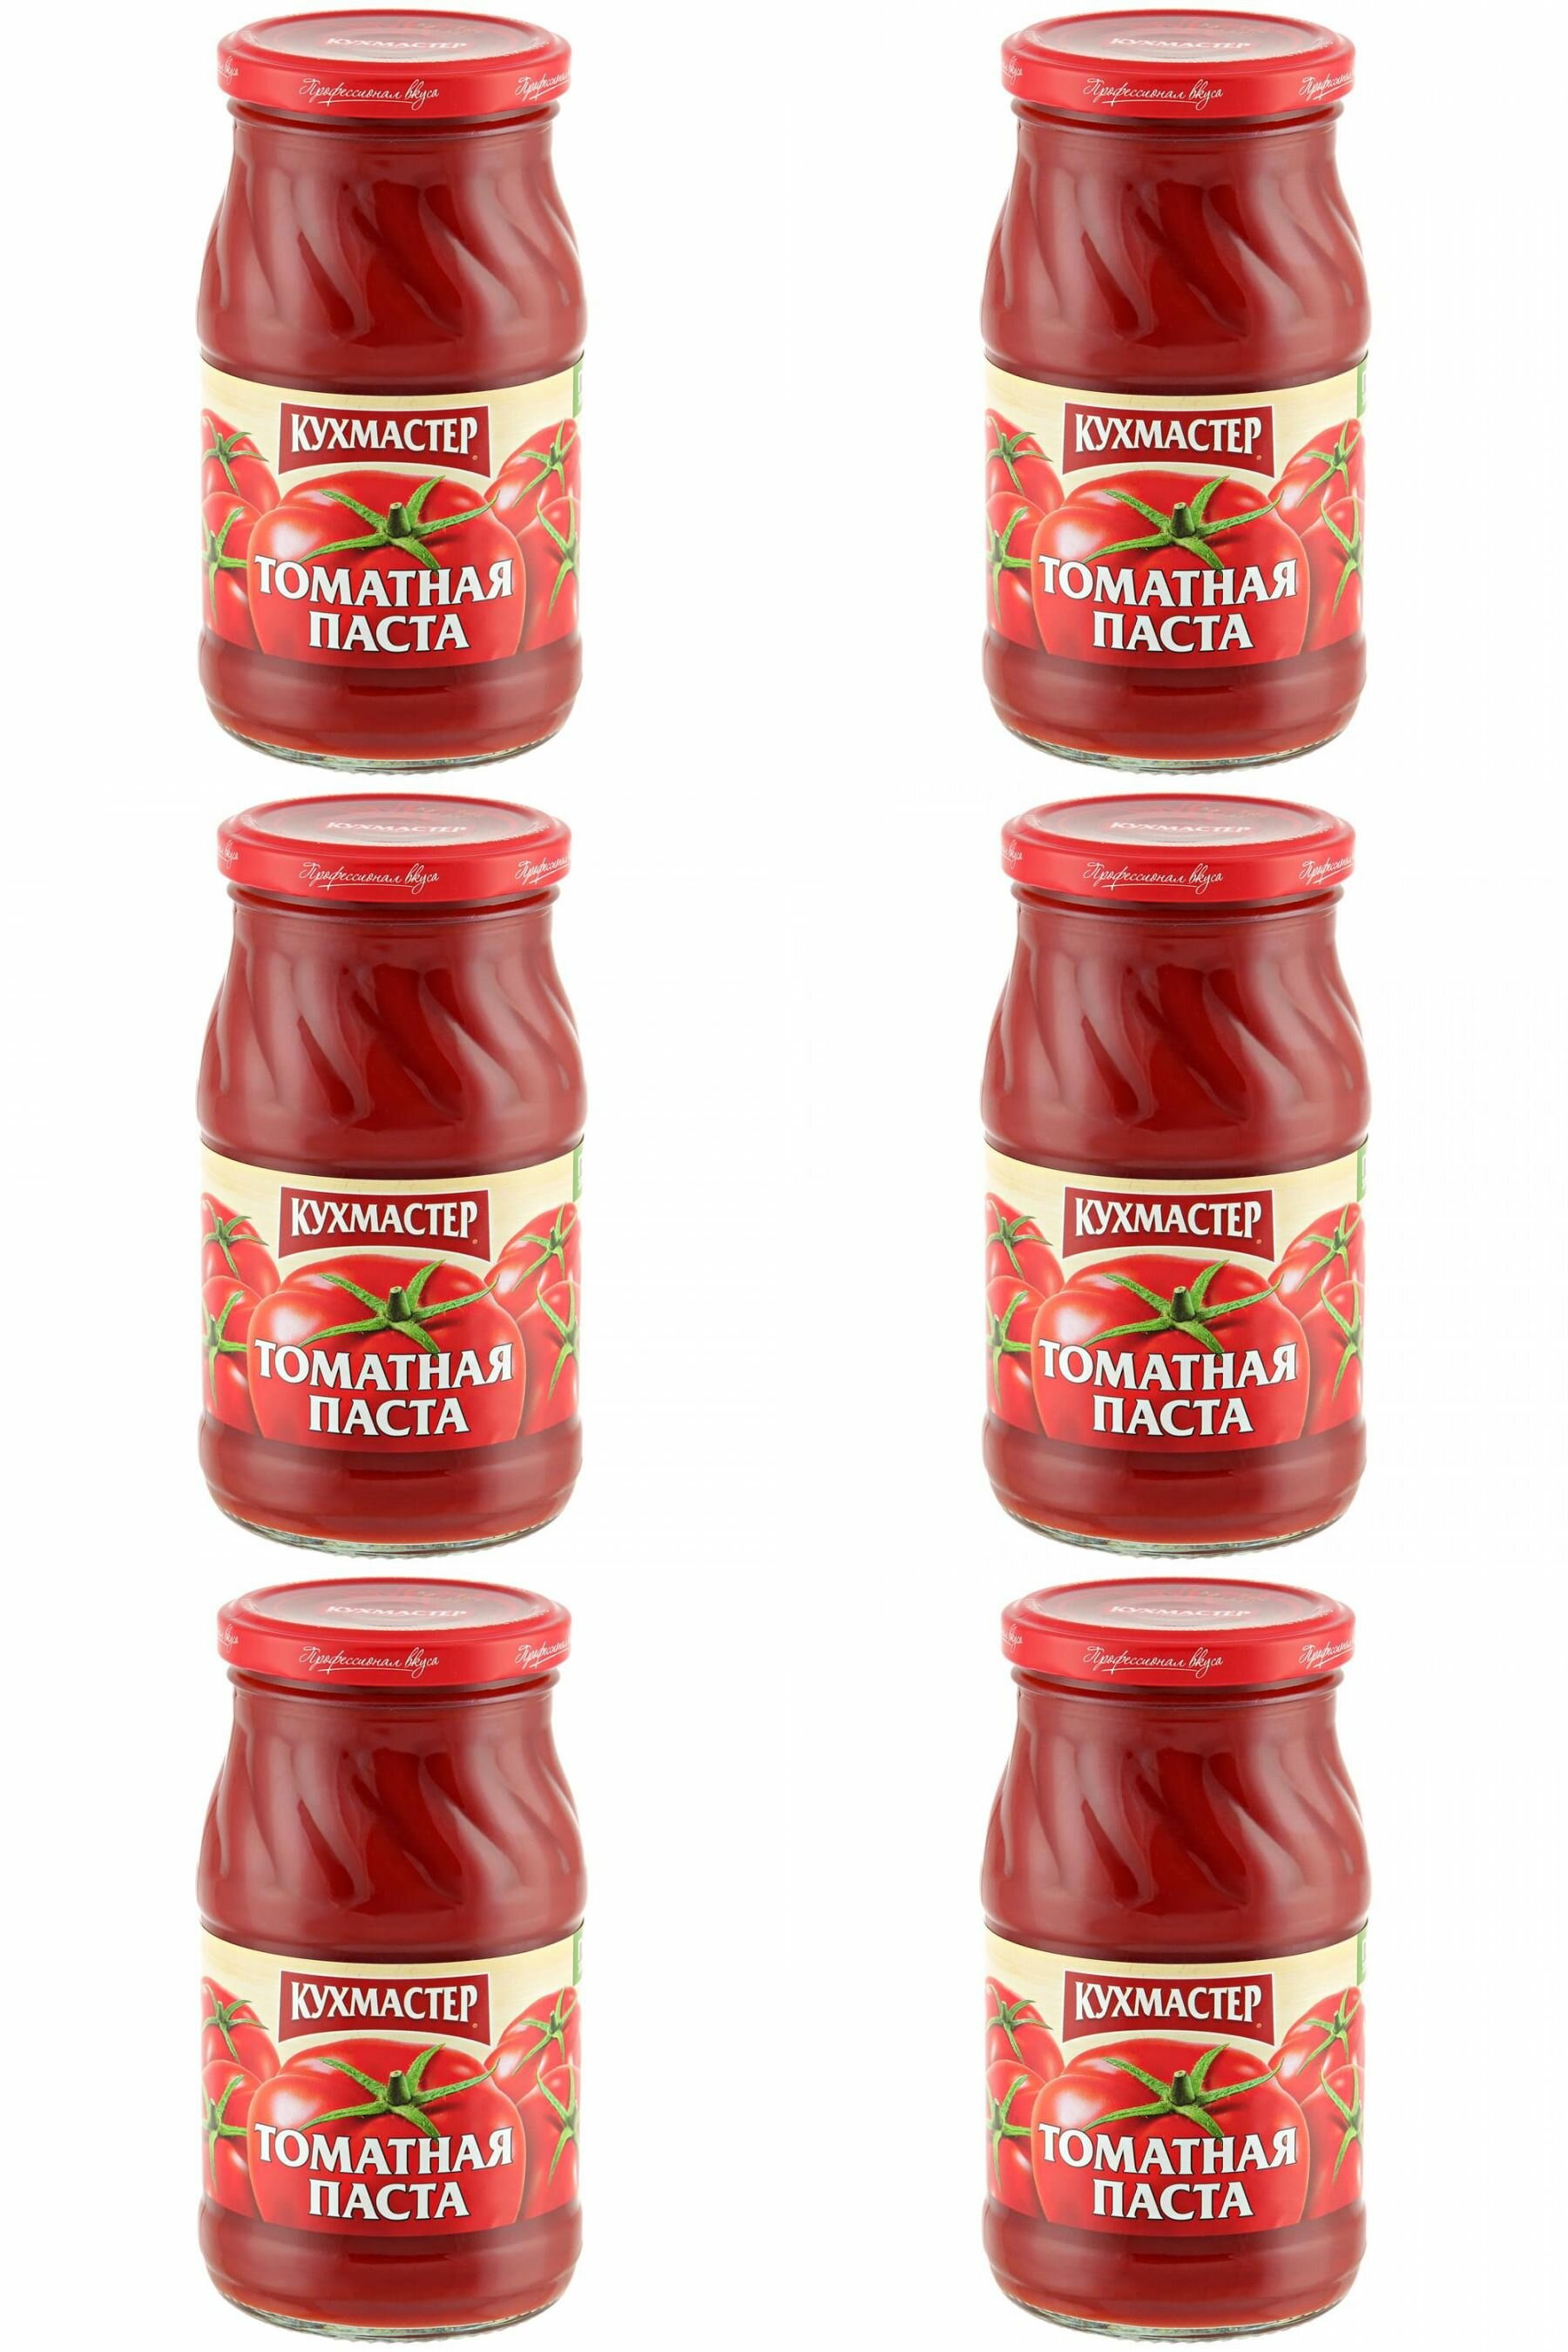 Кухмастер Паста томатная 25%, 270 г, 6 шт - фотография № 1